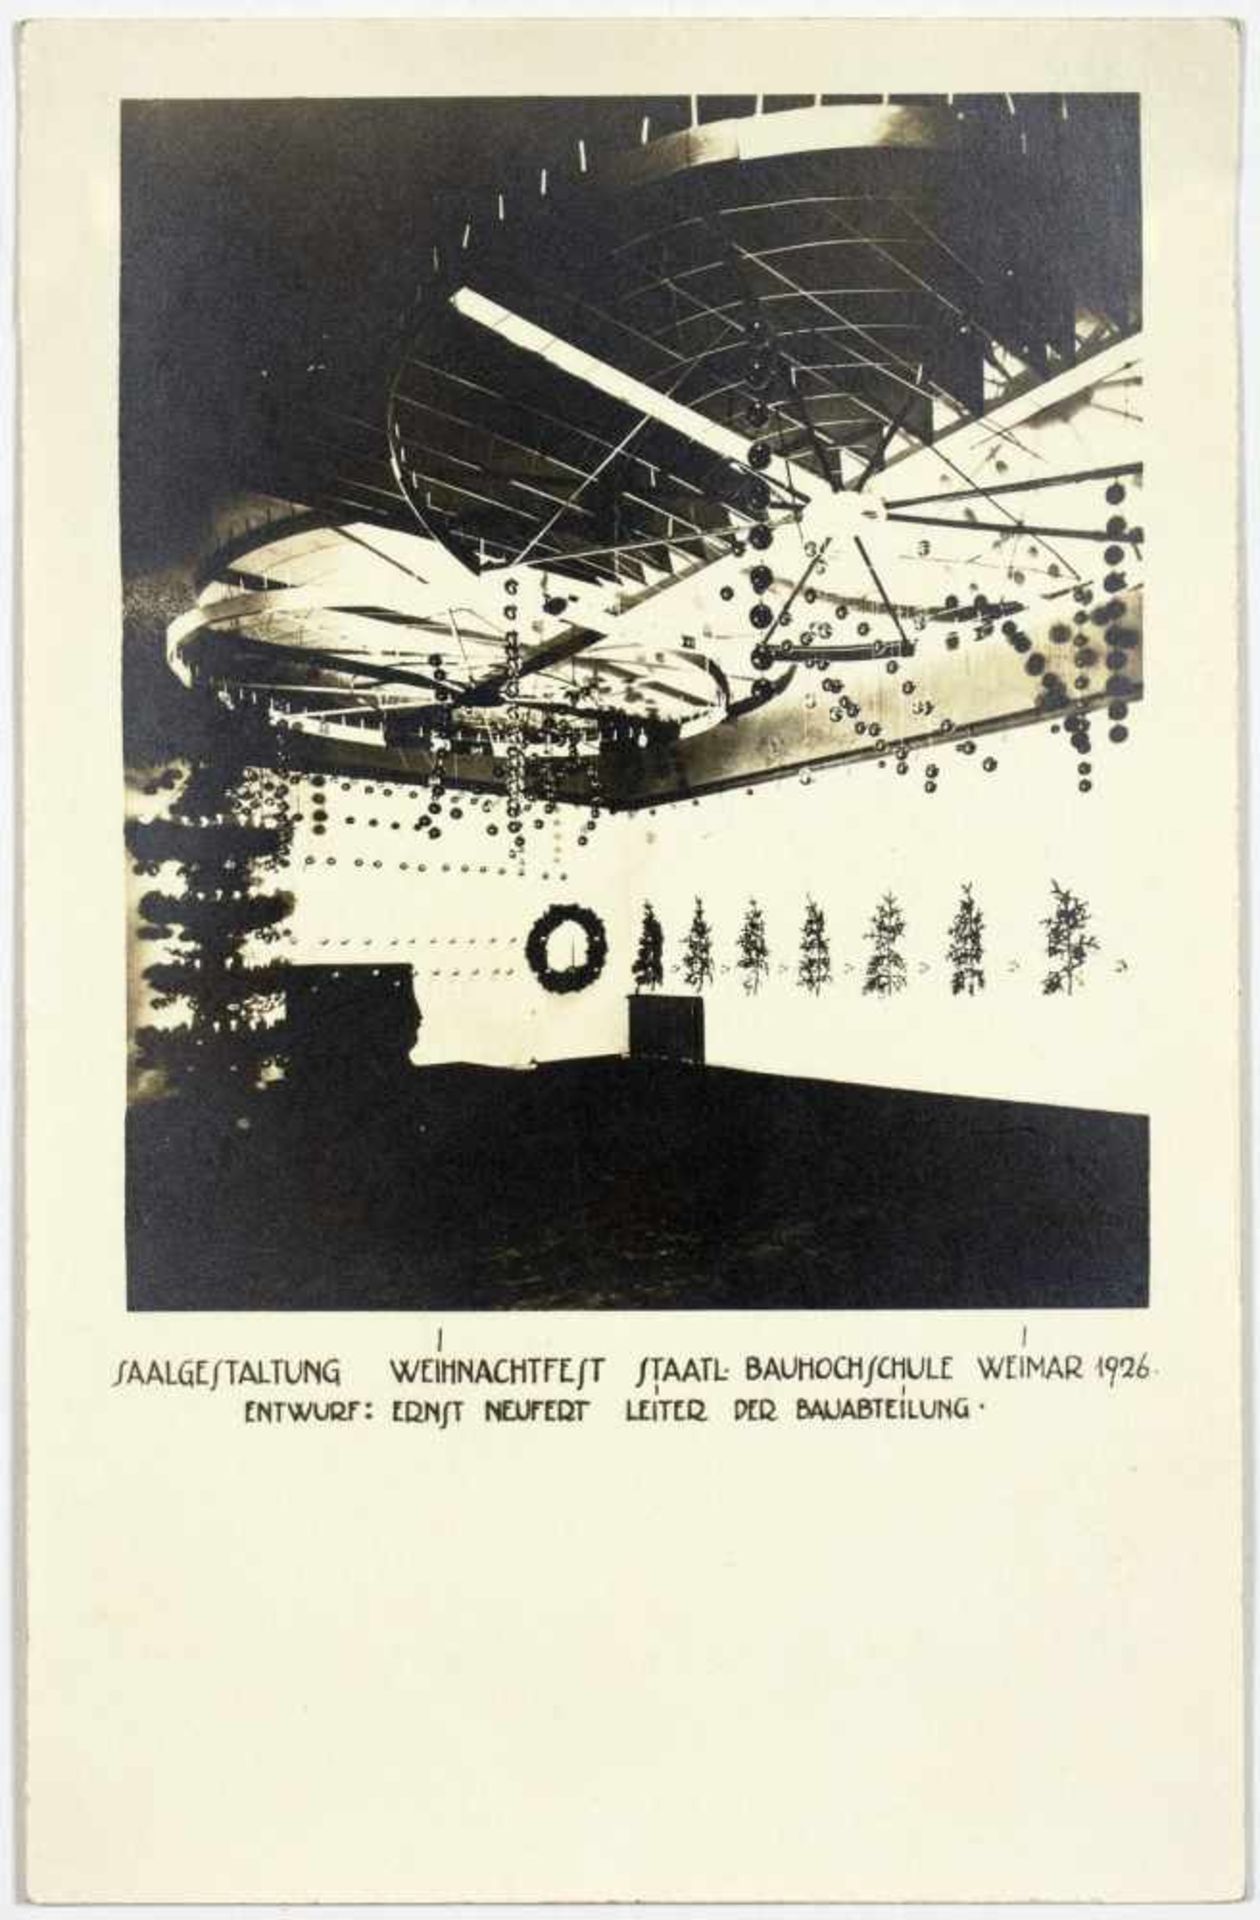 Bauhaus - Saalgestaltung Weihnachtsfest Staatl. Bauhochschule Weimar 1926. Drei Originalfotografien. - Image 2 of 3